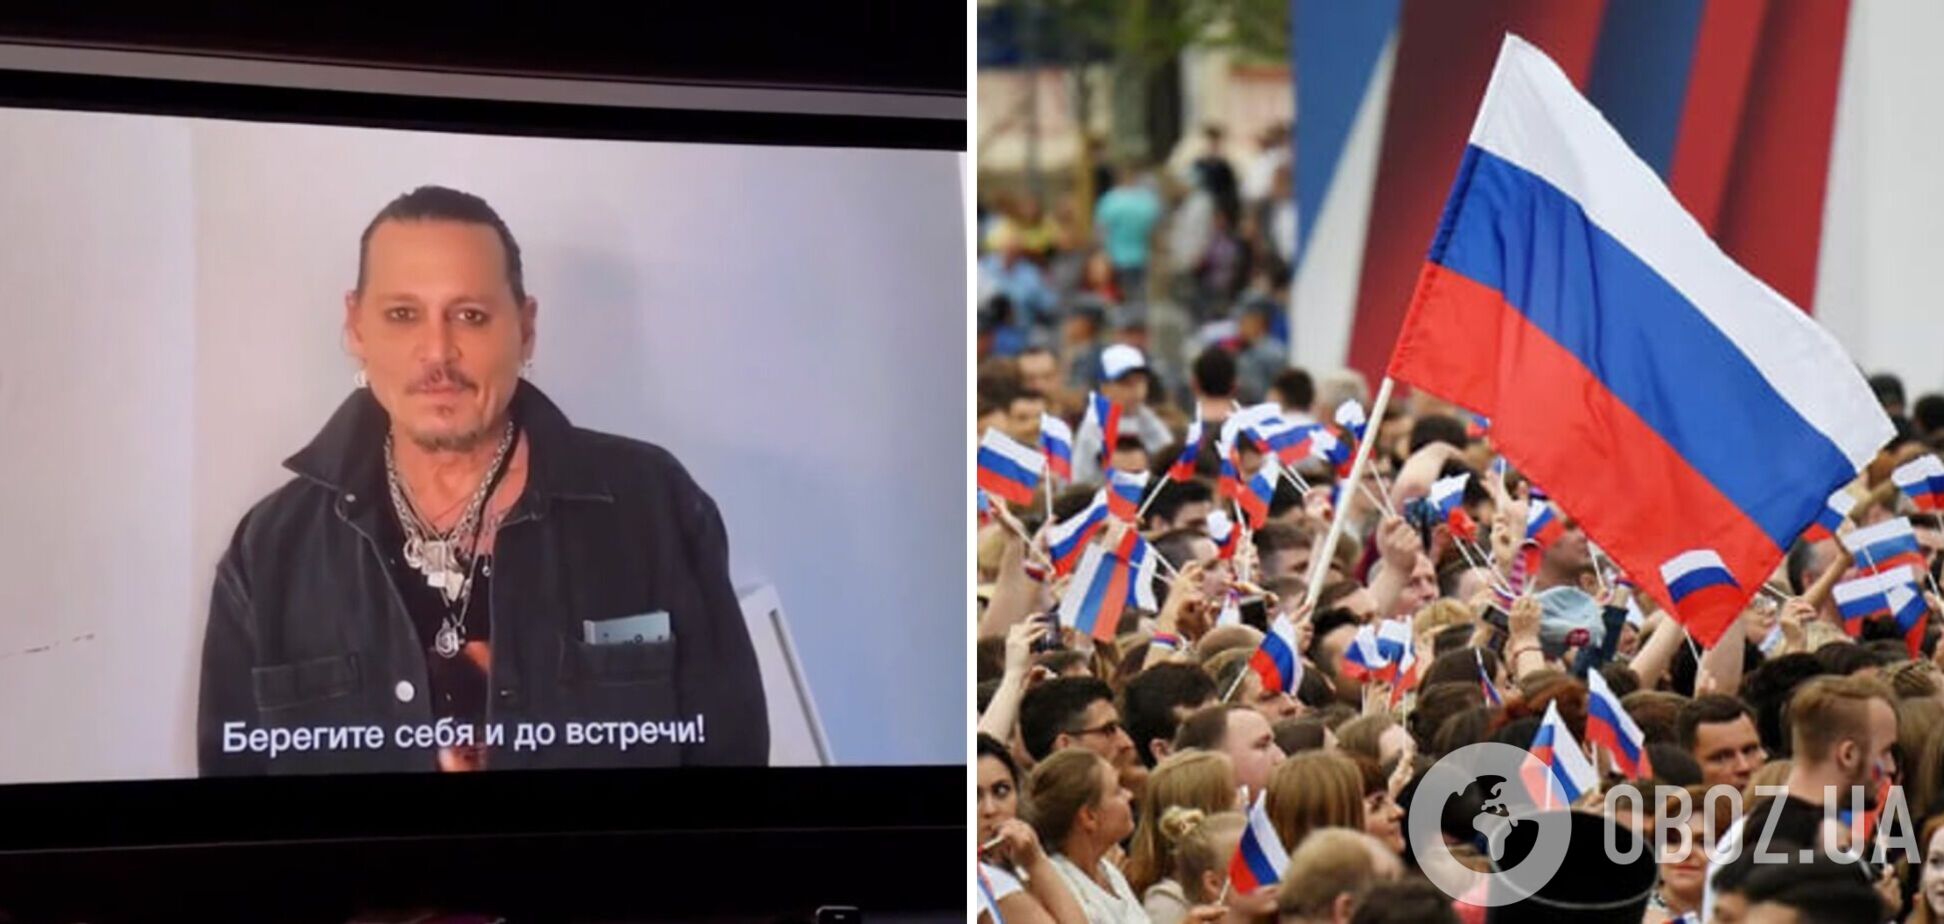 Джонни Депп обратился к россиянам с экрана и пожелал им 'беречь себя' после слухов о визите в Россию